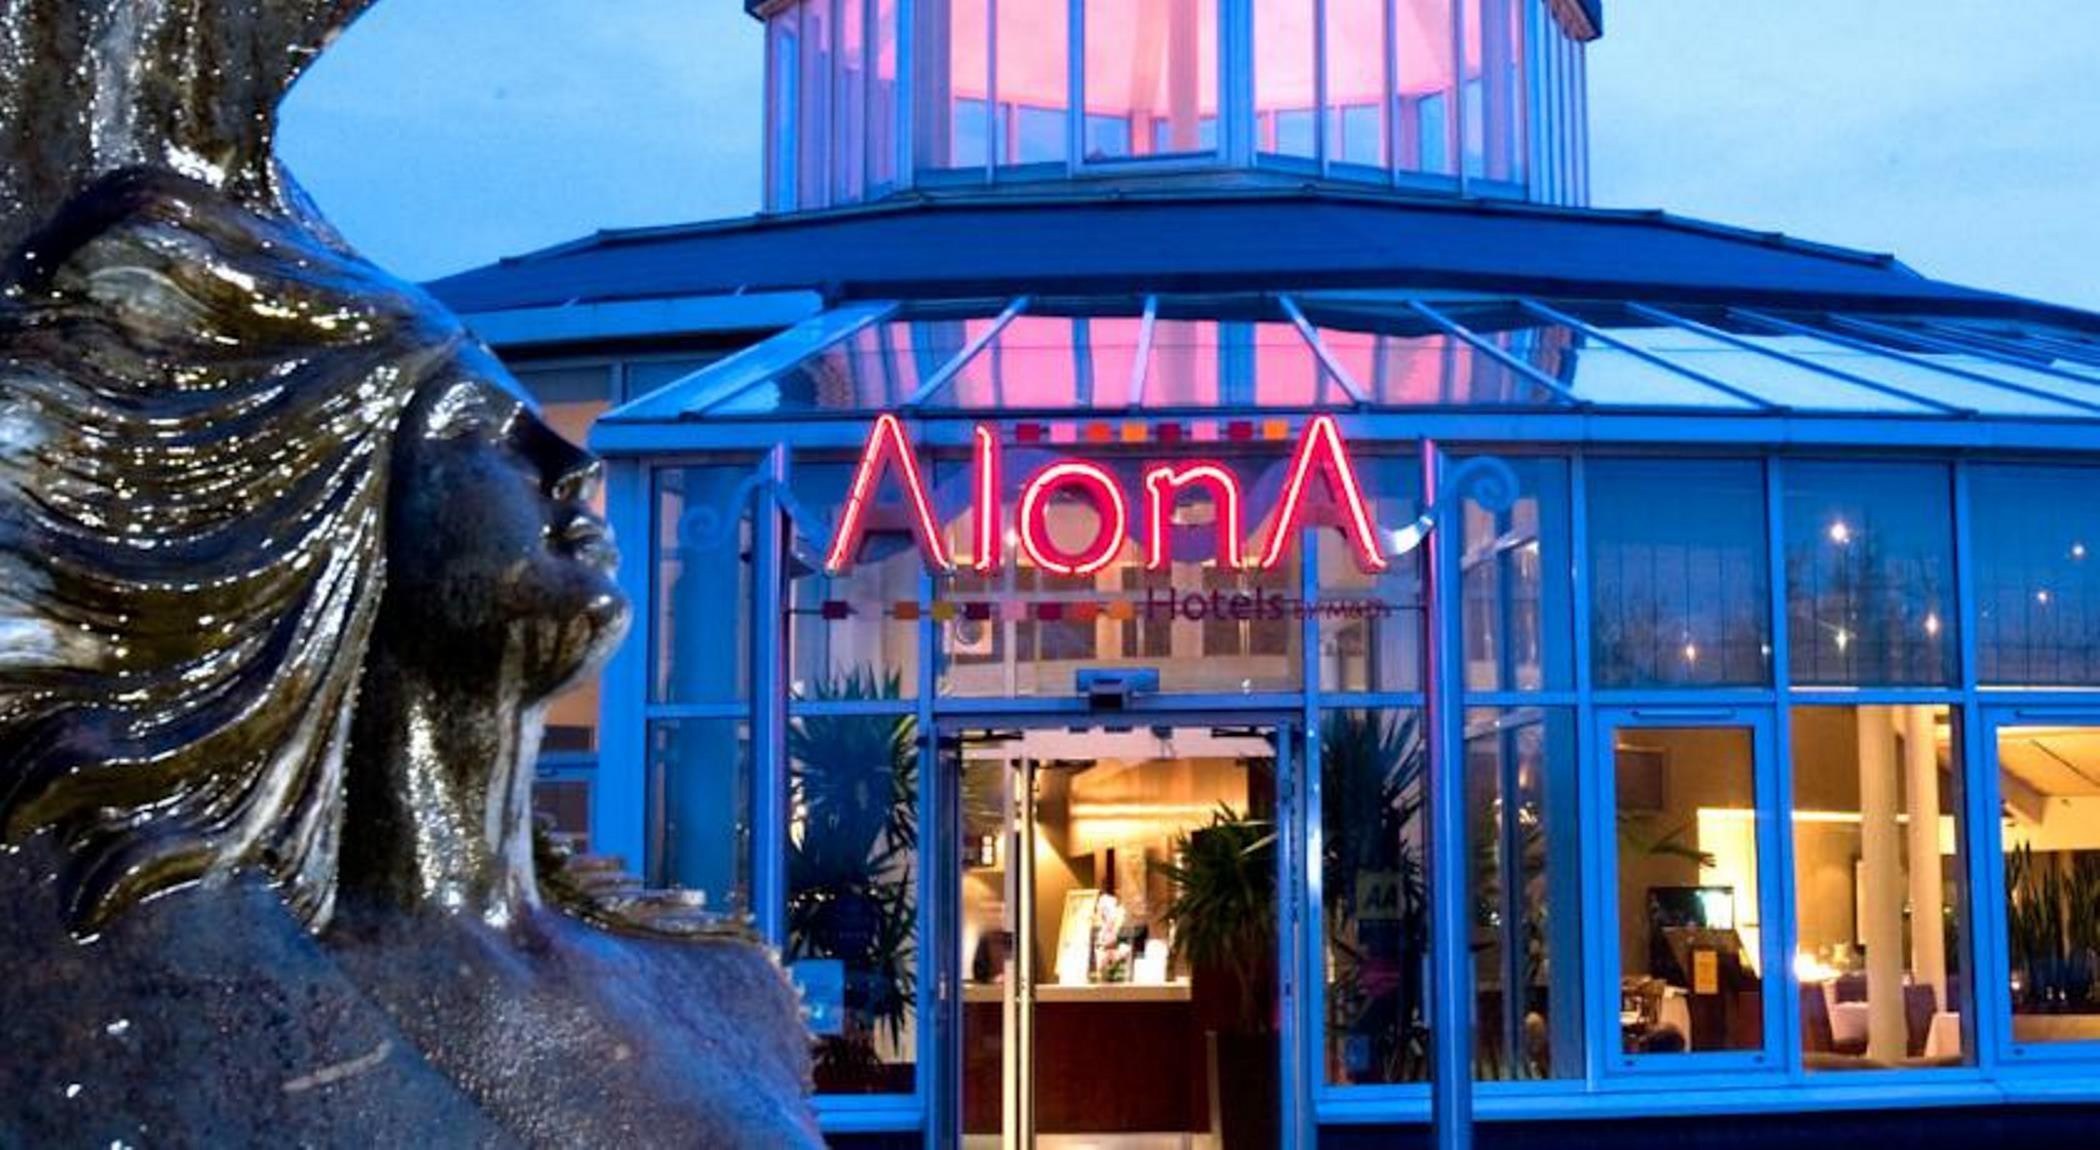 Alona Hotel image